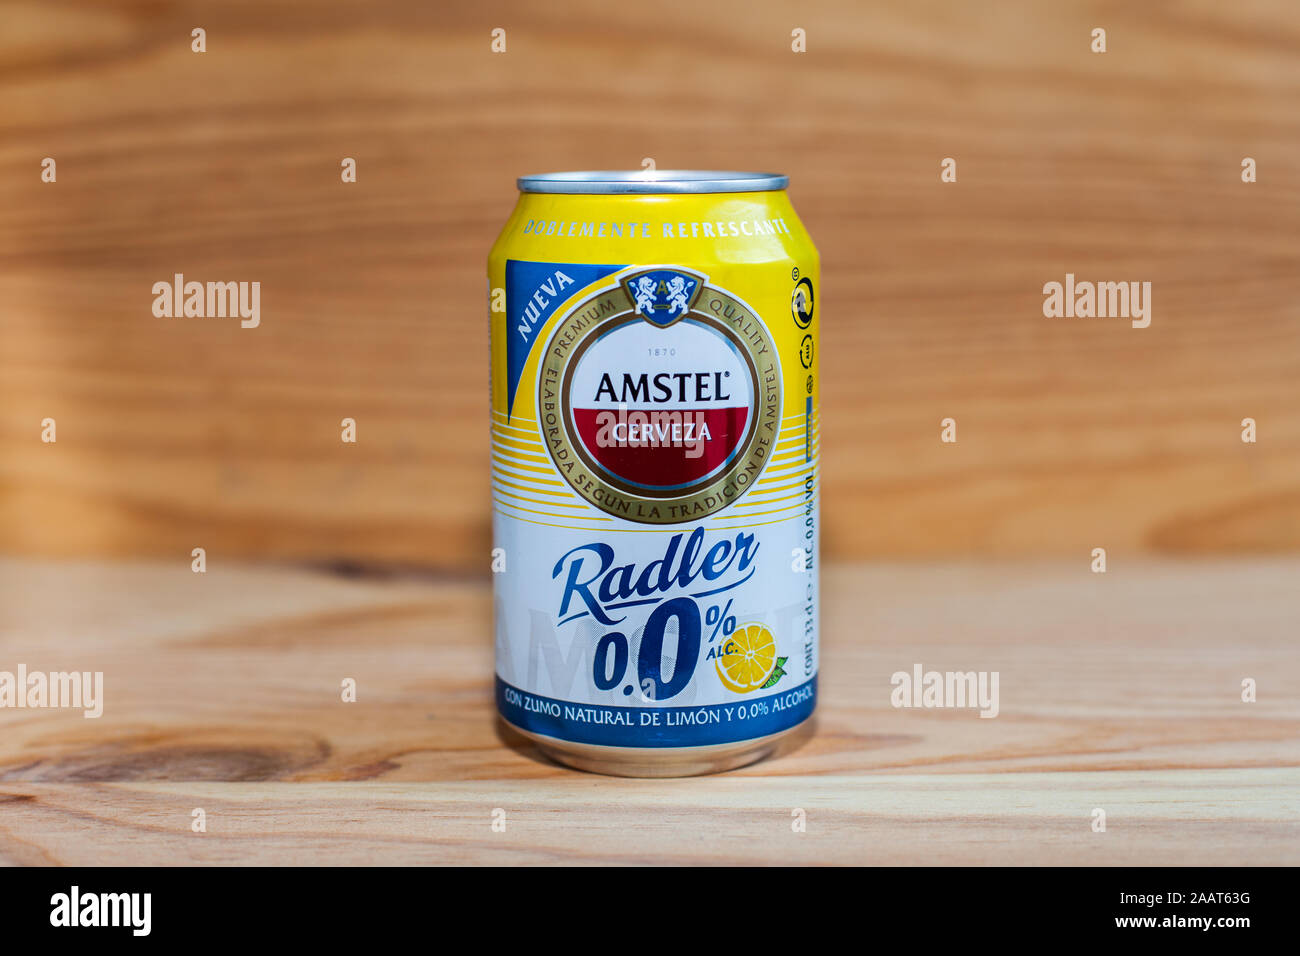 MANISES, Valence/Espagne - 27 janvier 2019 : Pouvez d'Amstel Radler 0,0 bières sans alcool sur bois Banque D'Images